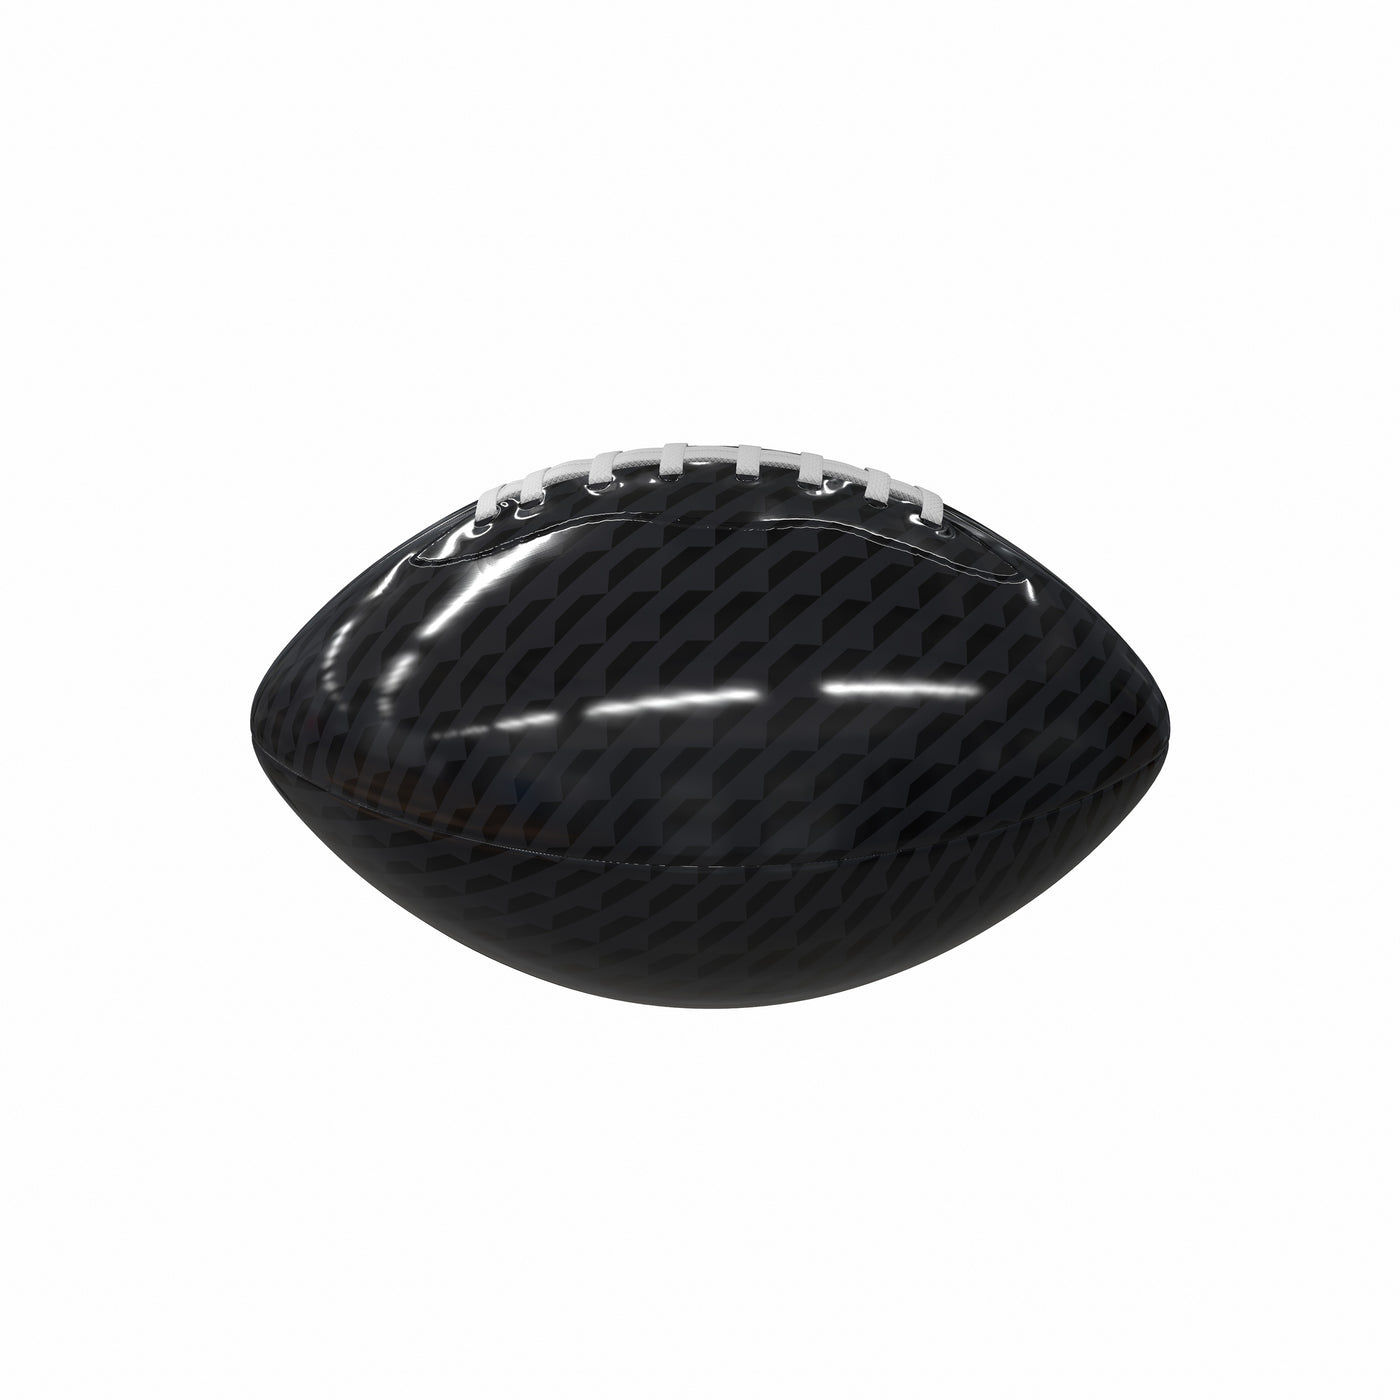 Plain Black Carbon Fiber Mini-Size Glossy Football